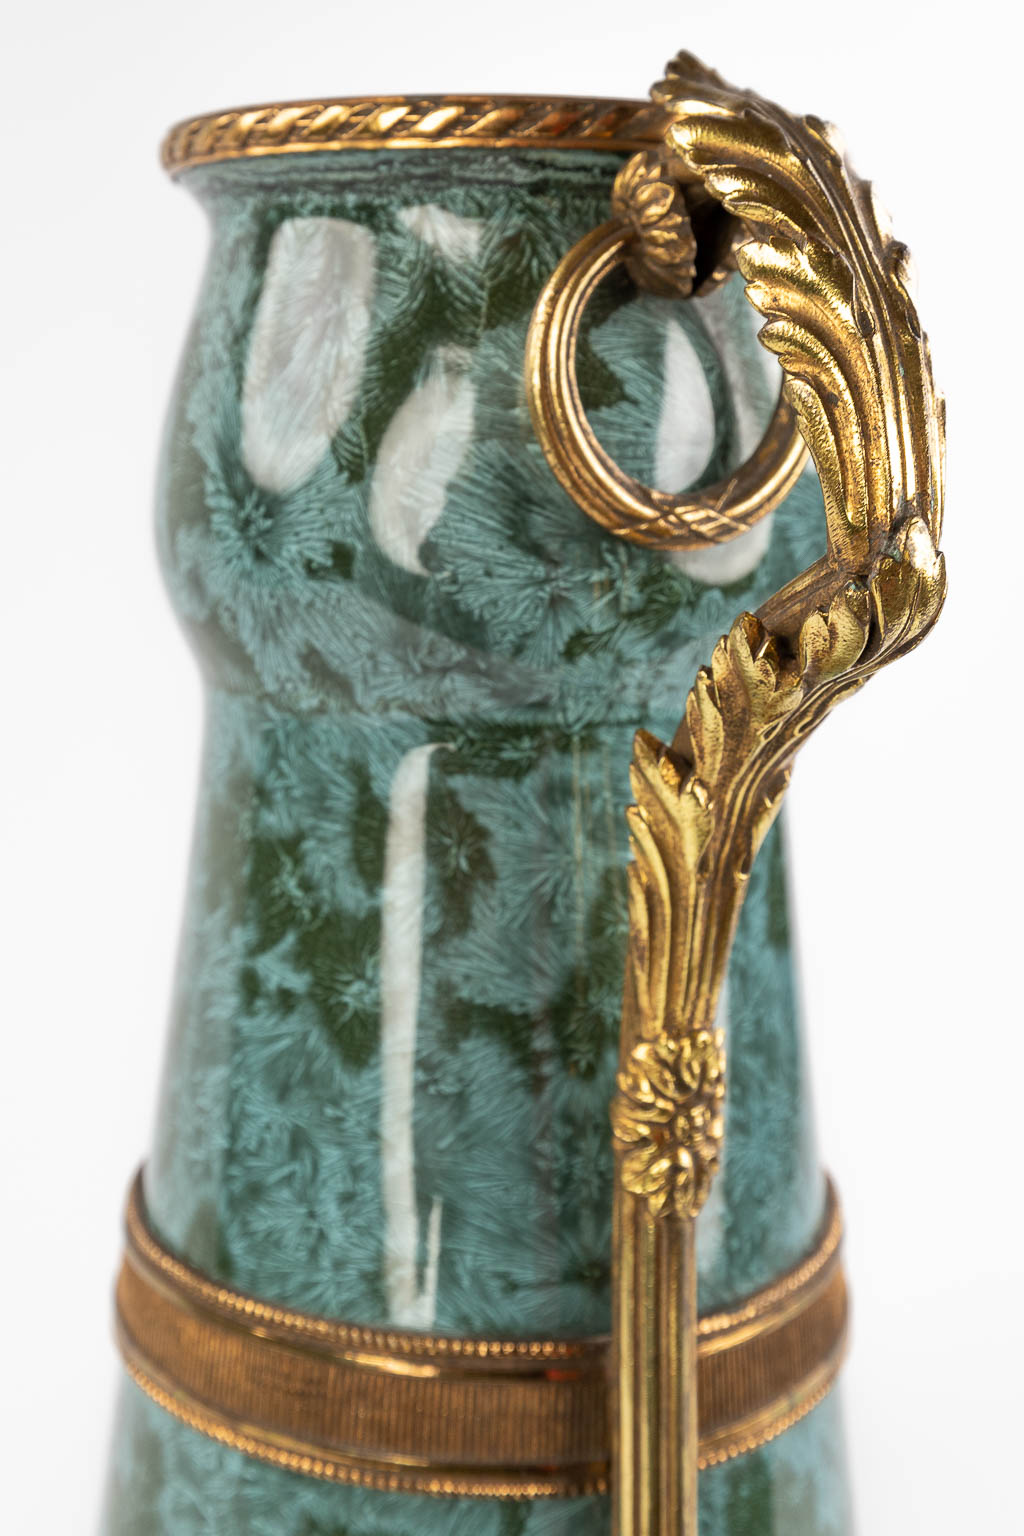 Sarreguemines model Sicilia, een faience vaas gemonteerd met brons. (L: 20 x W: 15 x H: 44 cm)